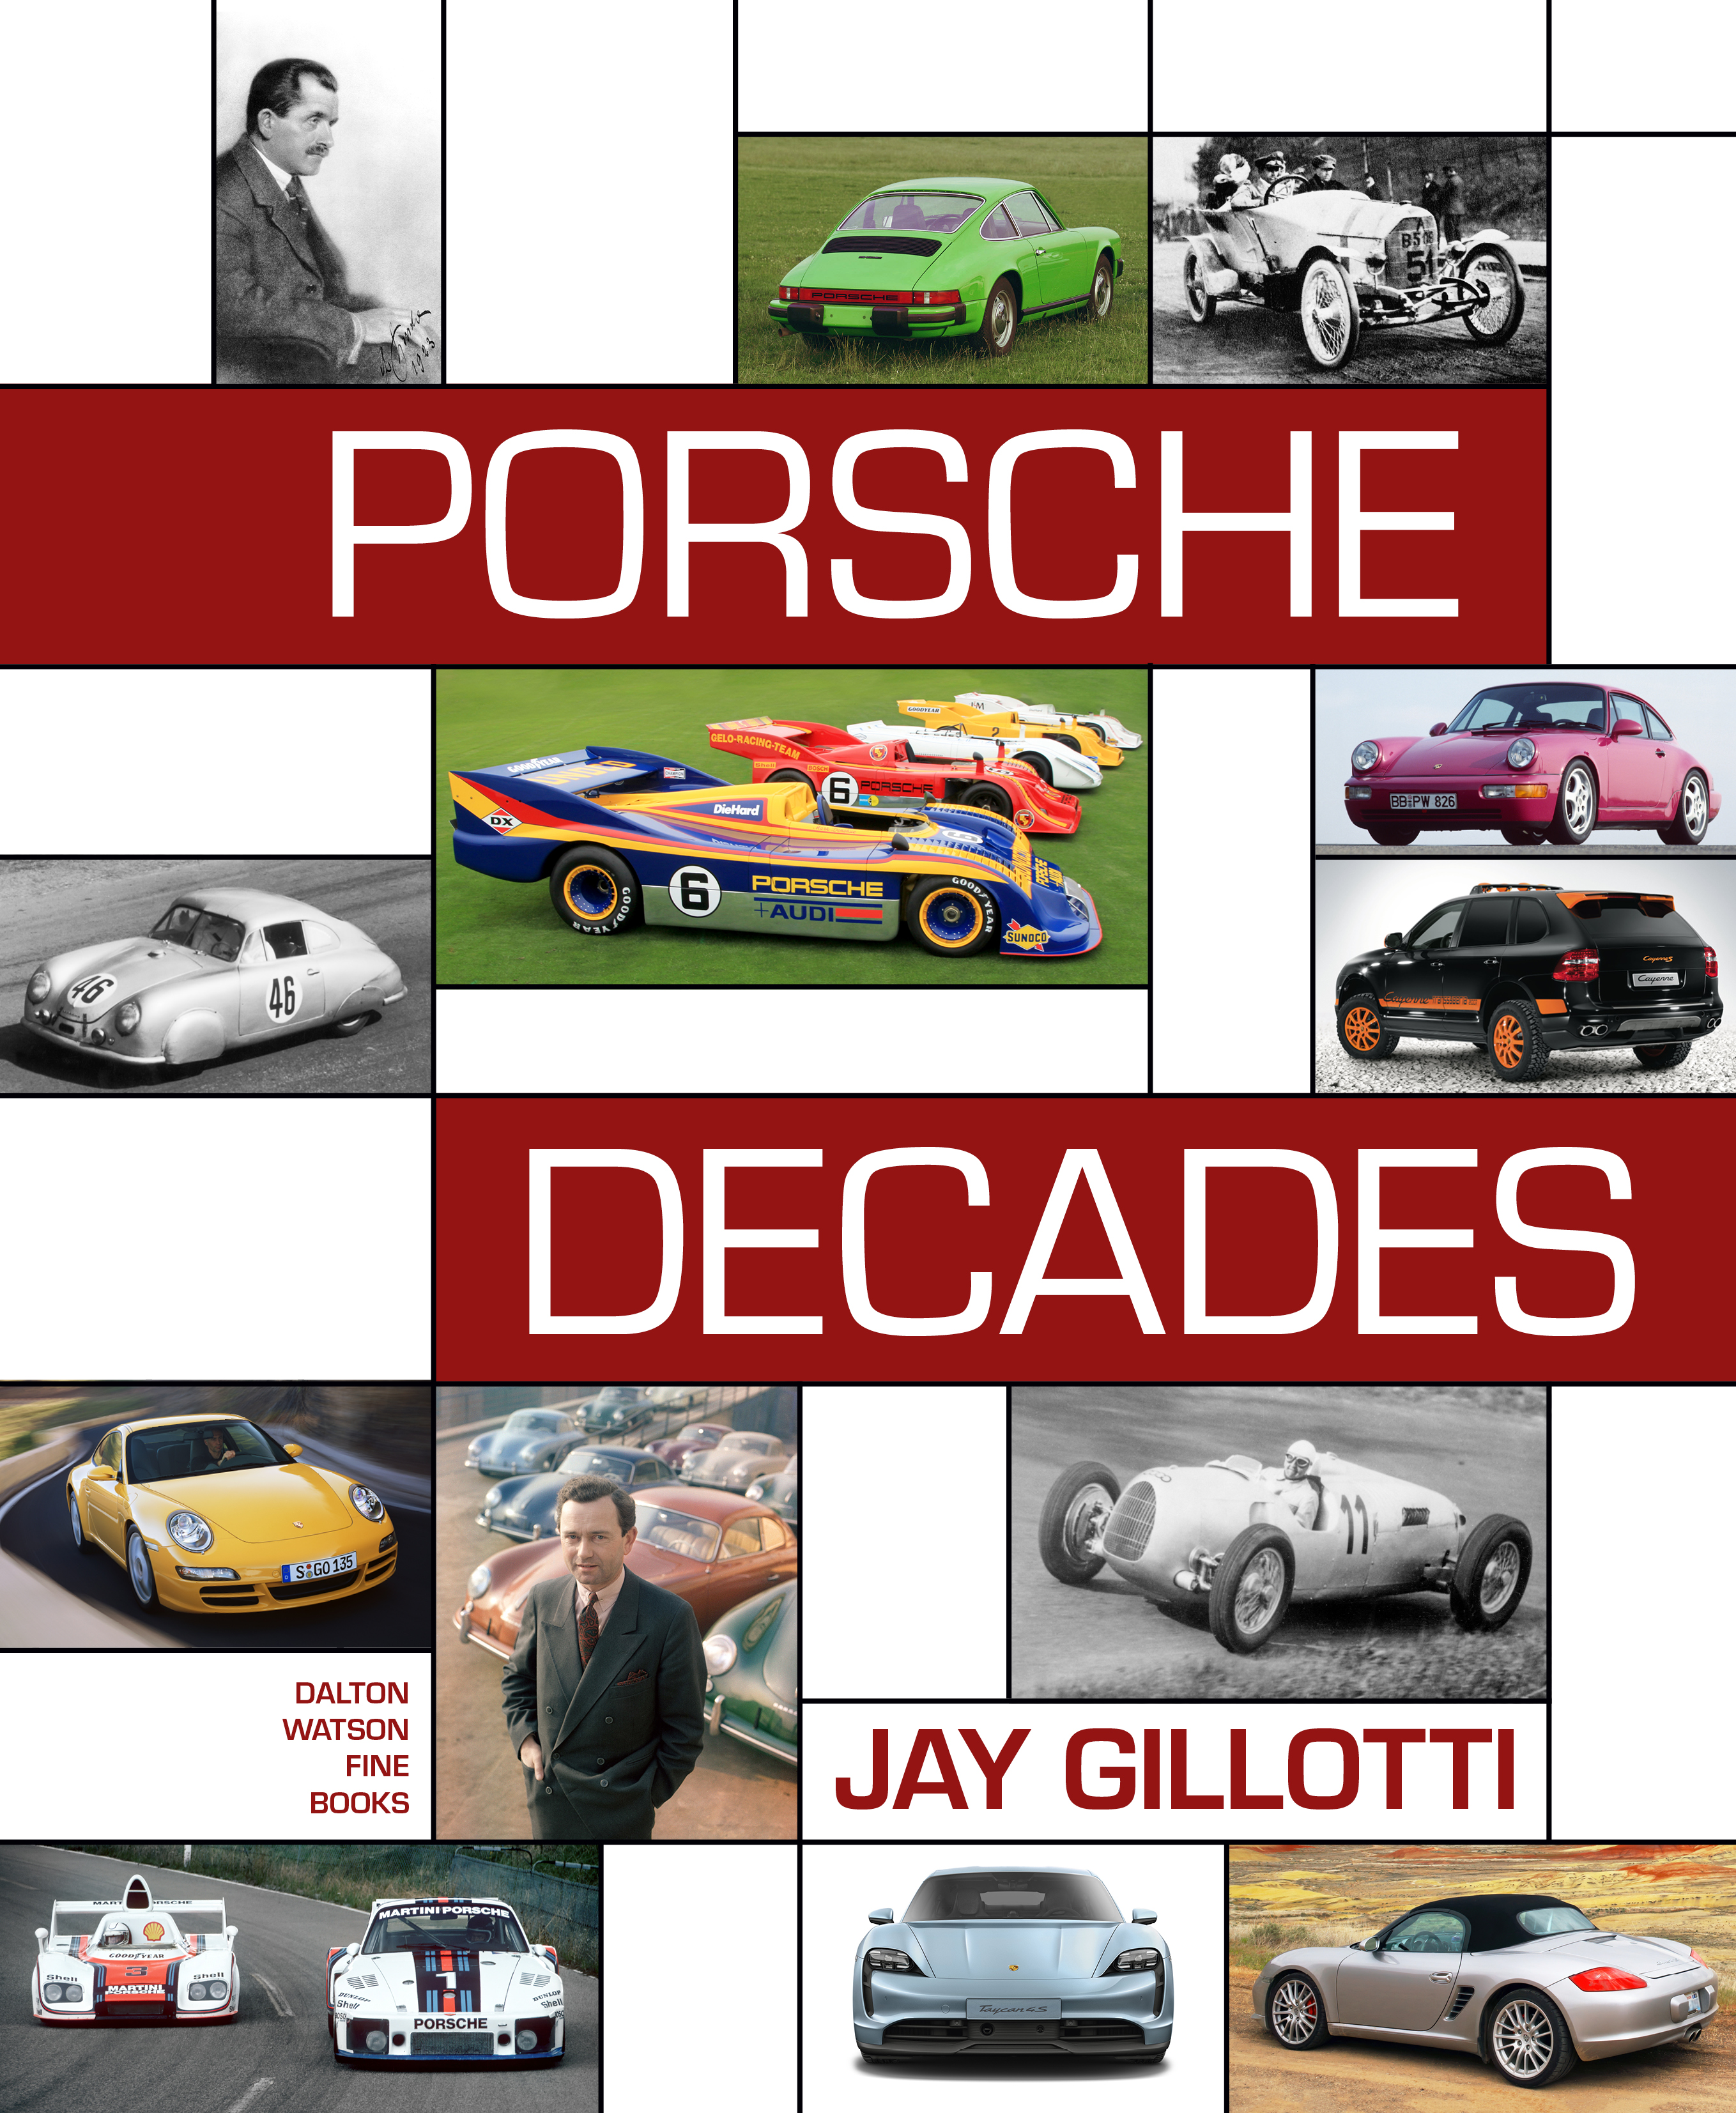 Porsche Decades by Jay Gillotti